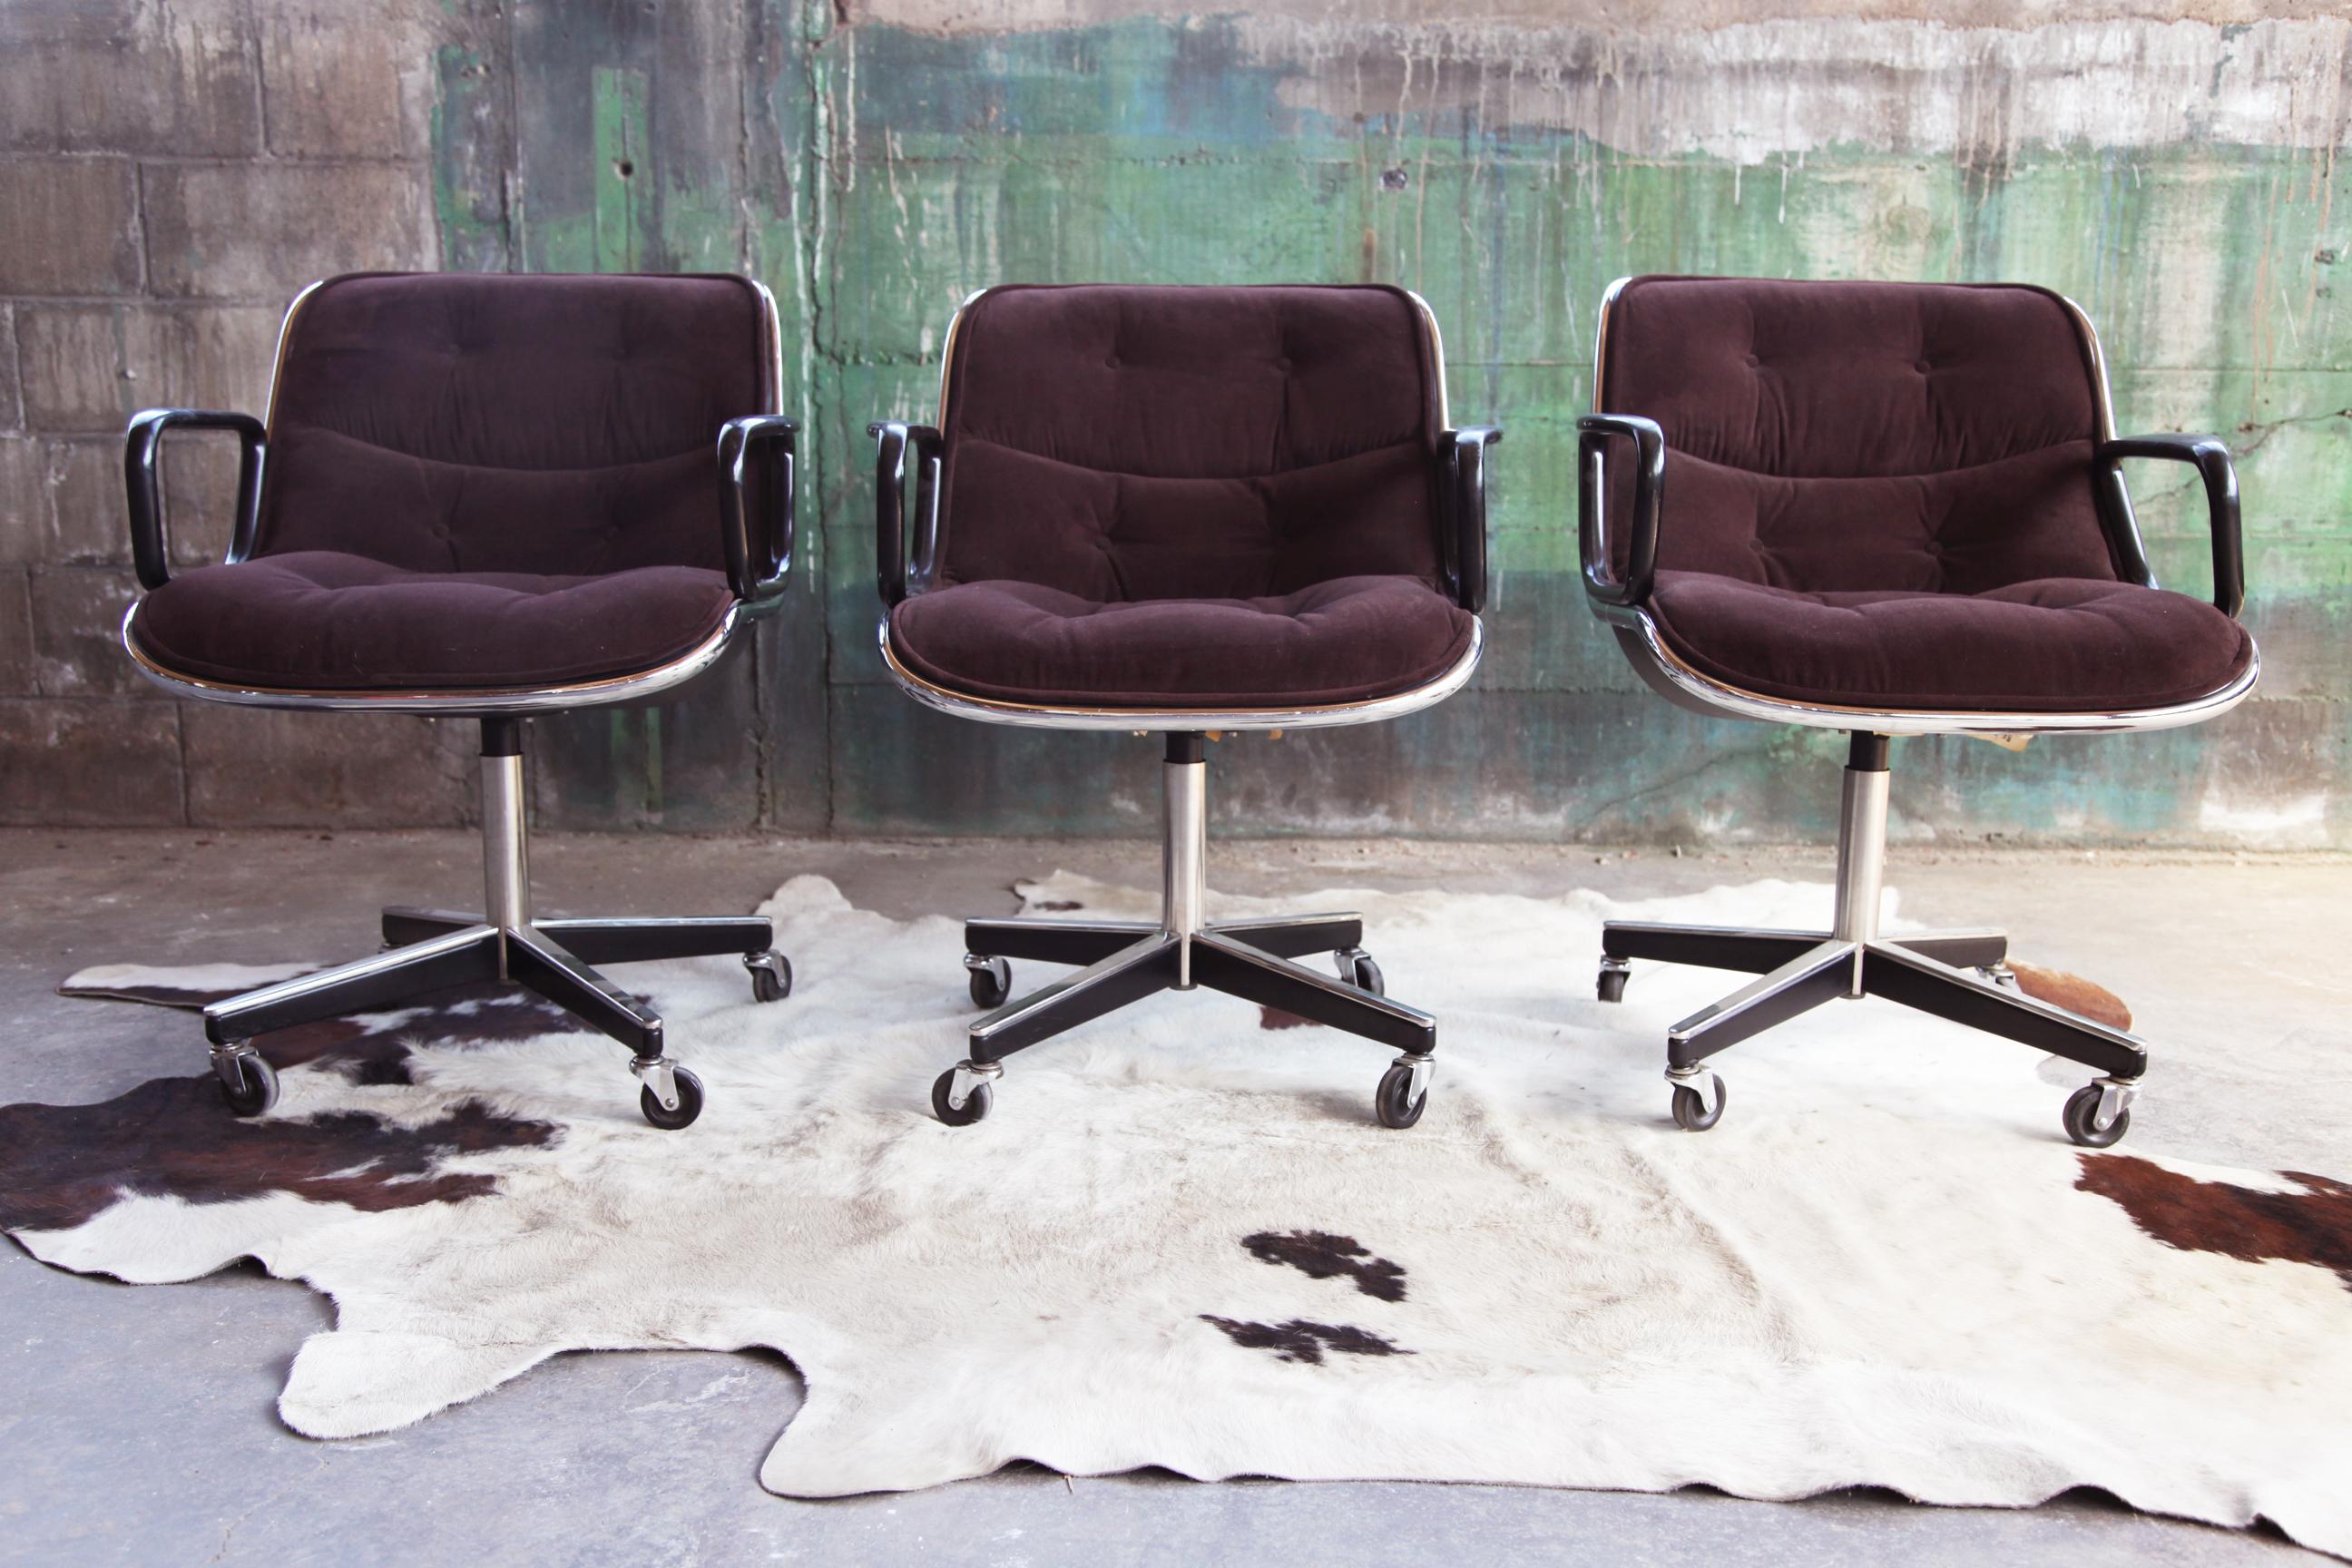 Dos disponibles, se venden por separado--Base original de 4 patas (¡¡Buscada!!) marrón y cromada de la silla Mid Century Vintage Knoll Pollock--RARA belleza--de la época del apogeo de la creación de sillas de oficina tanto de gran diseño como de